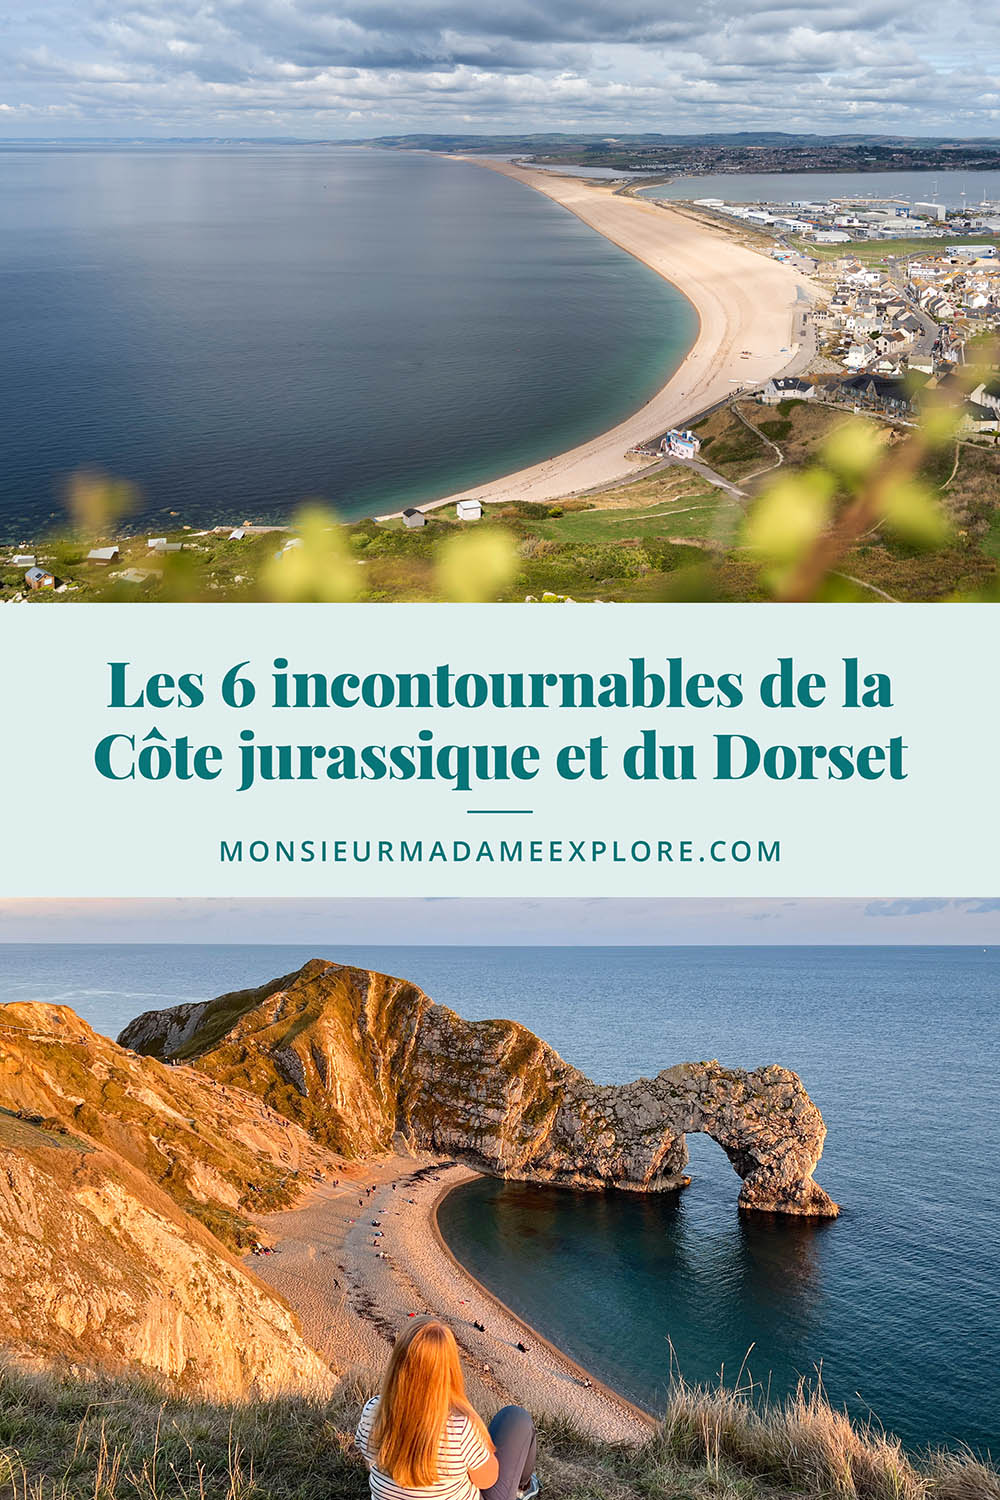 Les 6 incontournables de la Côte jurassique et du Dorset, Monsieur+Madame Explore, Blogue de voyage, Angleterre, UK / 6 must-do on the Jurassic Coast and in Dorset, England, UK